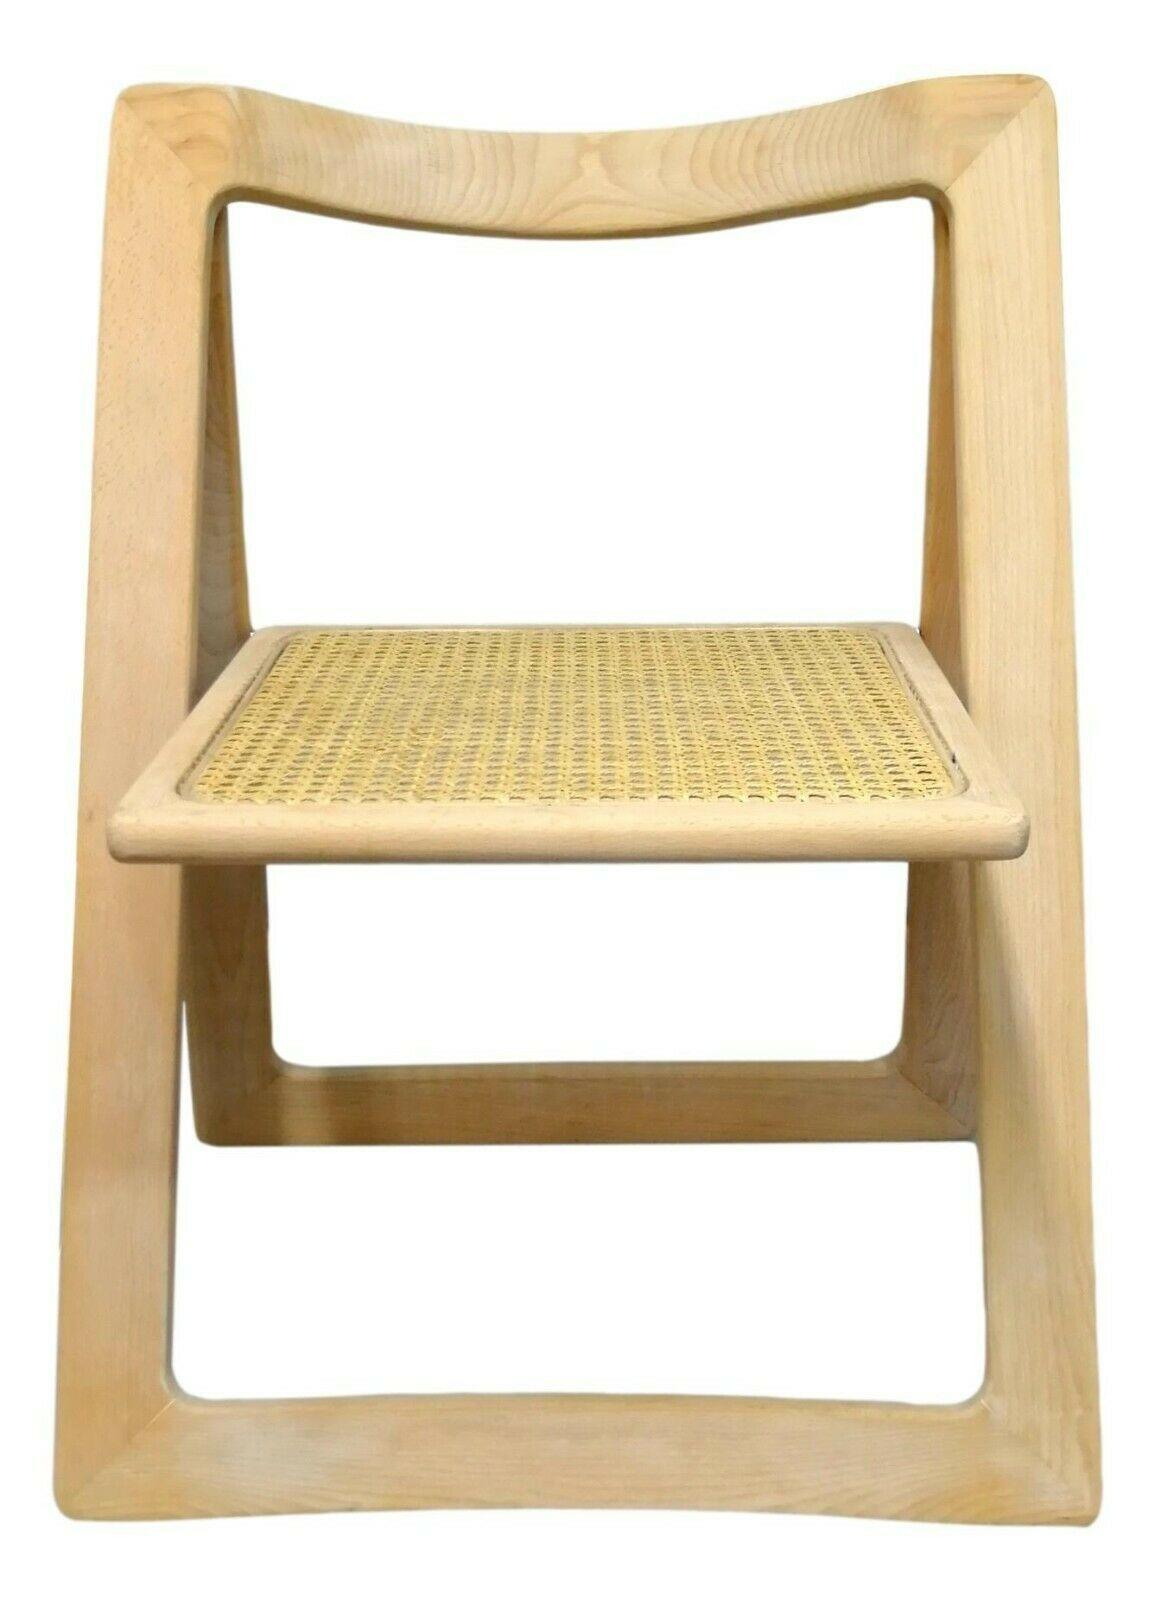 trieste chair